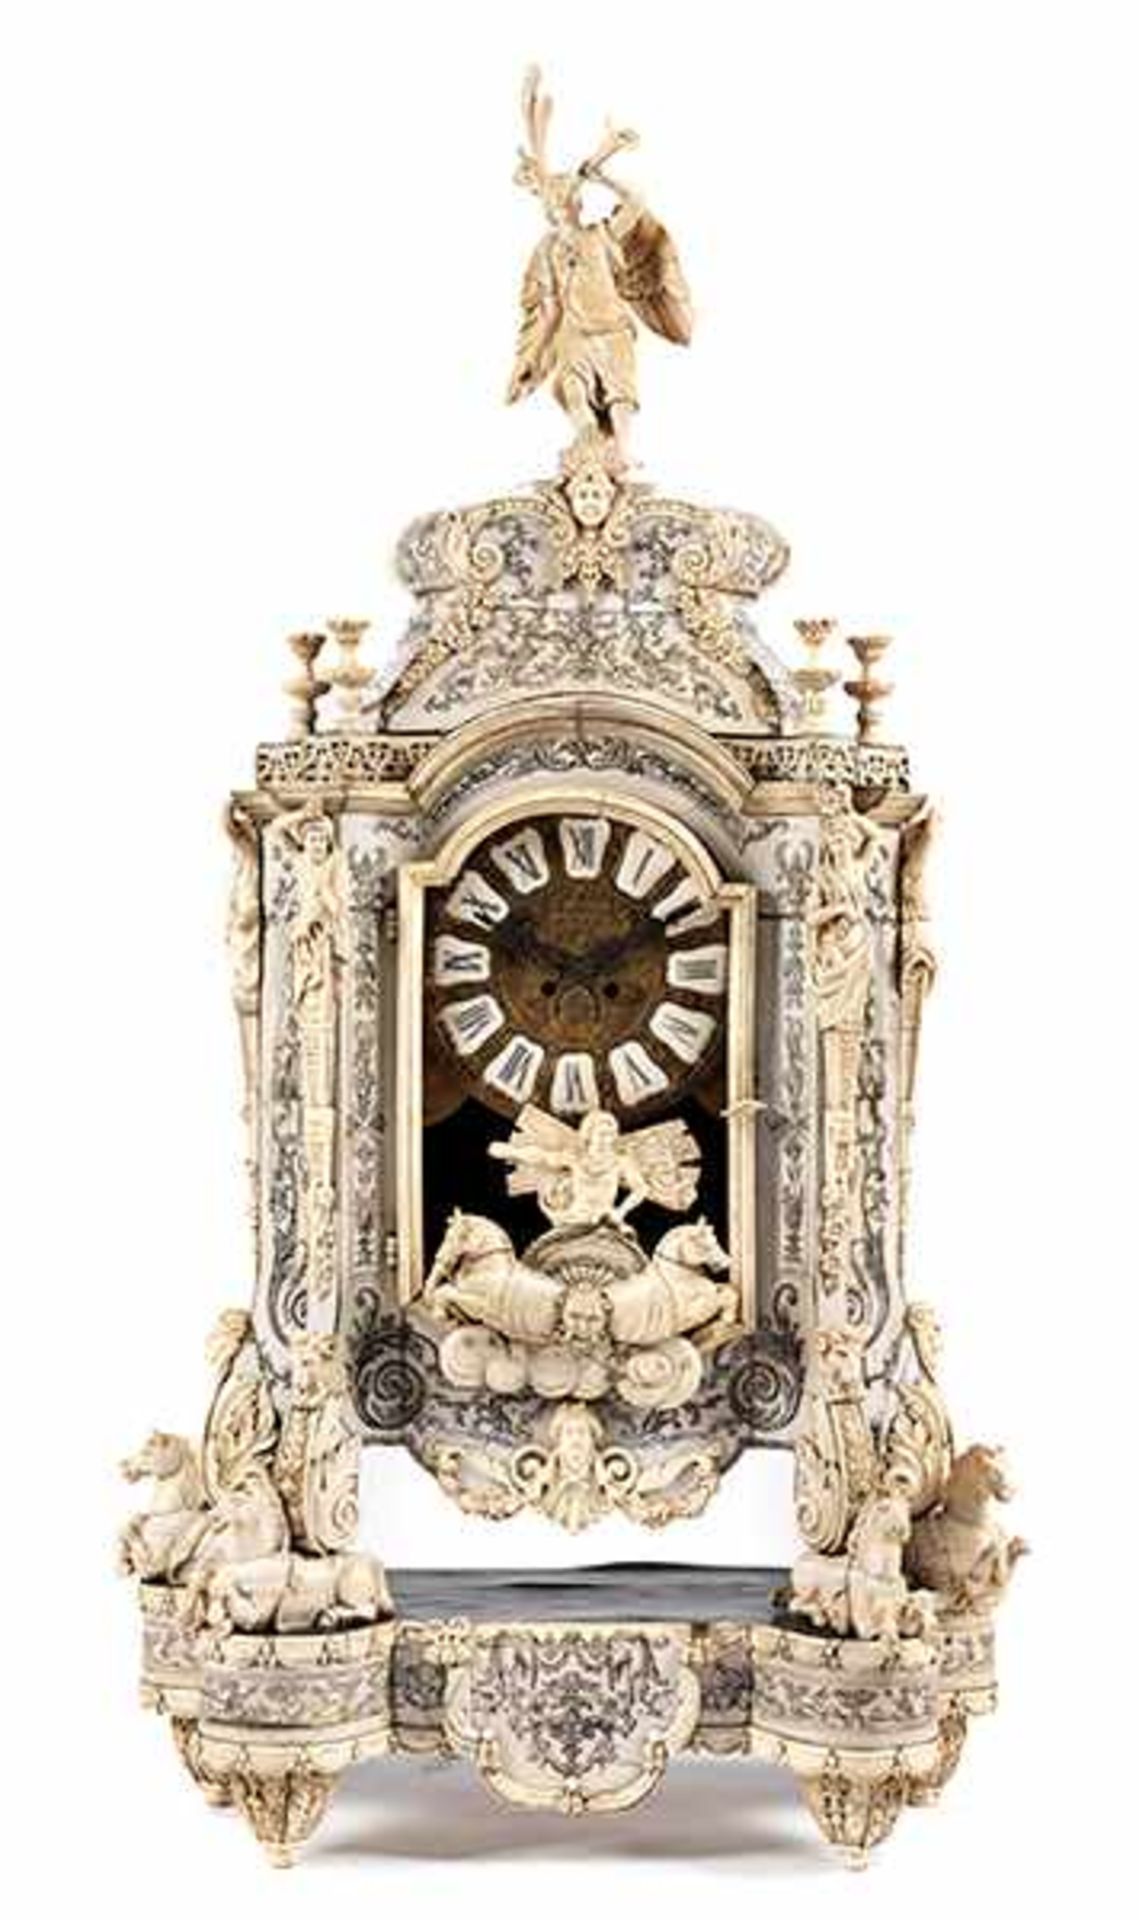 Aufwendig gearbeitete Louis XIV-Uhr in Elfenbein Gesamthöhe: ca. 153 cm. 19. Jahrhundert. - Bild 8 aus 21